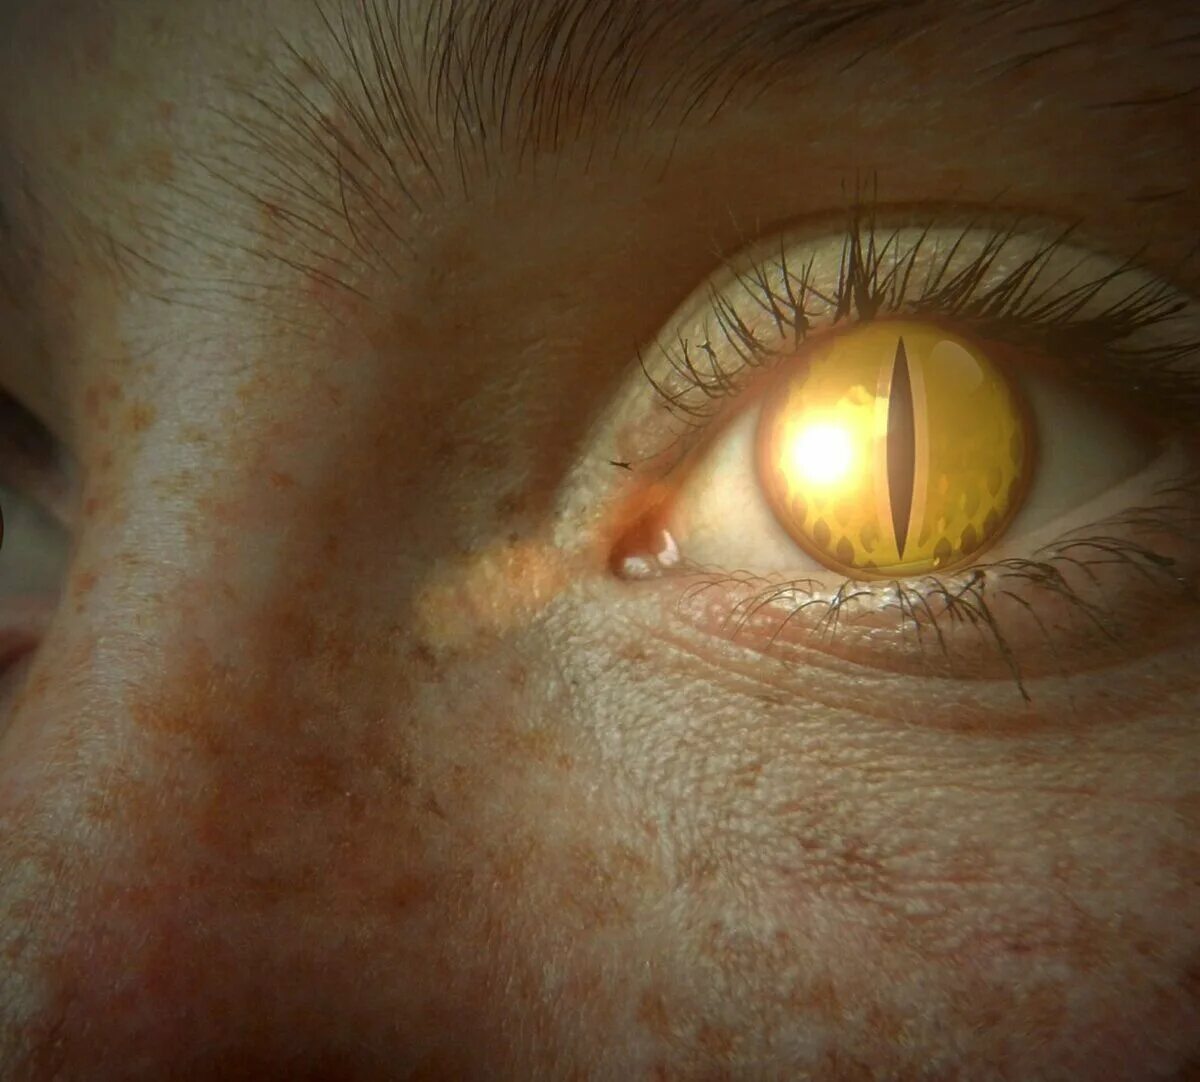 Желтый глаз 13. Желтые глаза. Глаз человека. Желто янтарные глаза. Желтые глаза с вертикальным зрачком.